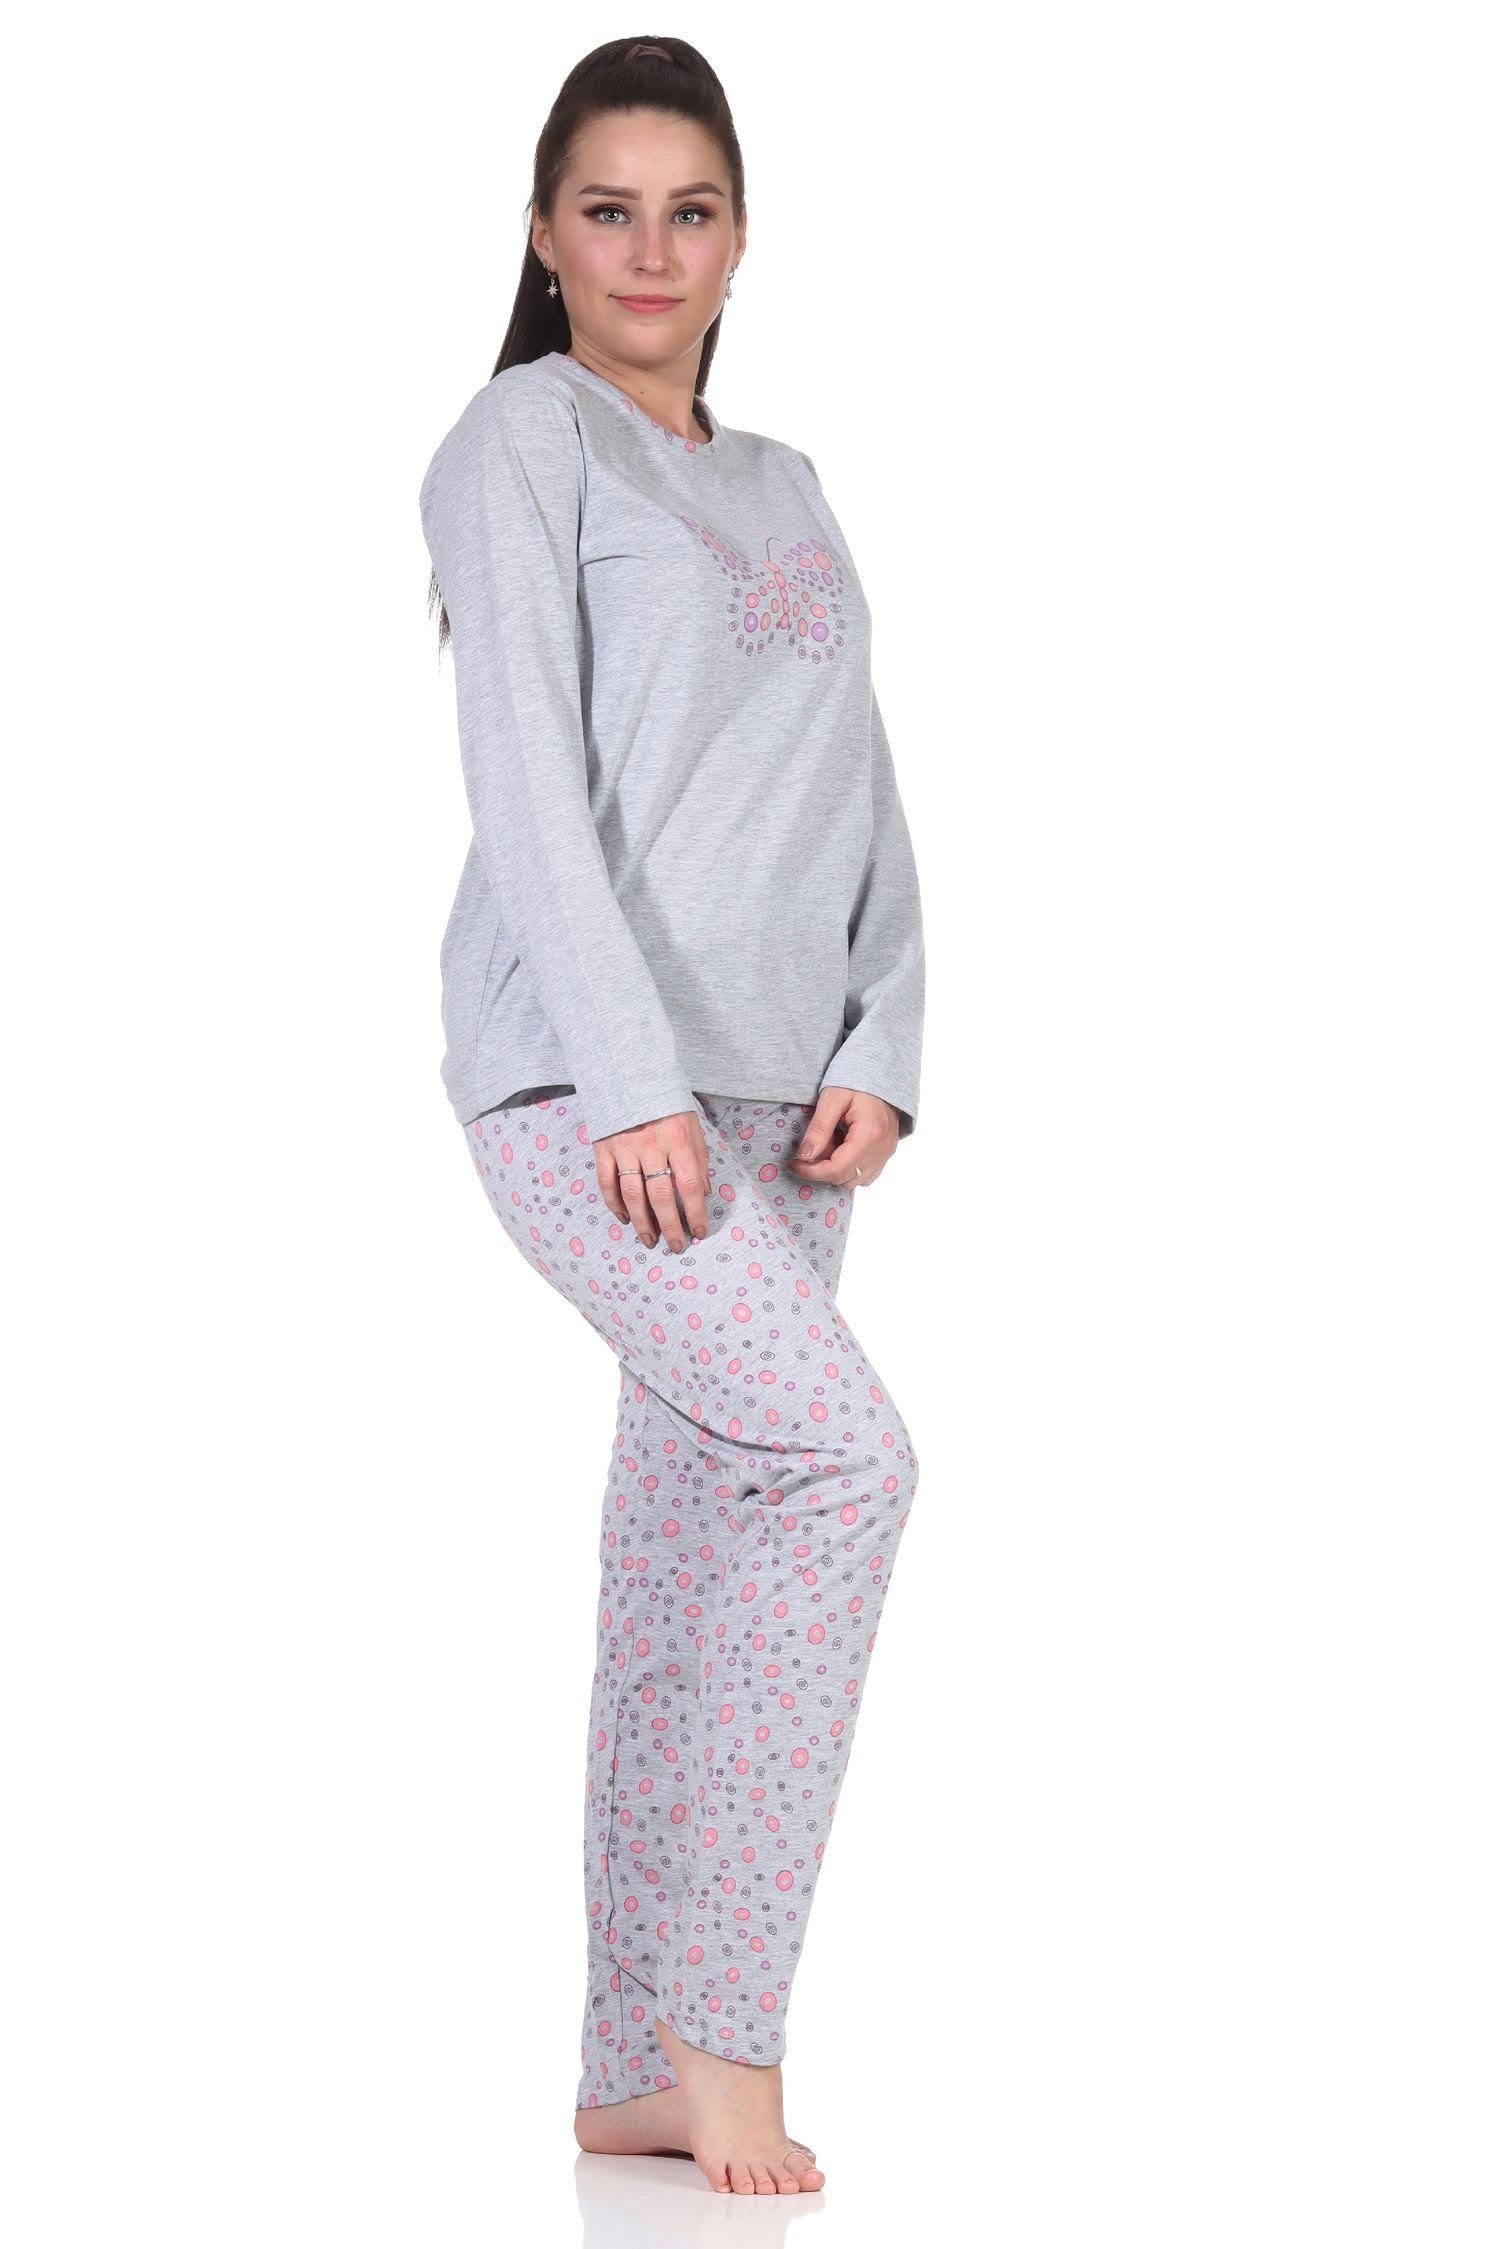 Wäsche/Bademode Pyjamas RELAX by Normann Pyjama Damen langarm Schlafanzug Pyjama mit Schmetterlingen als Motiv - 112 201 10 714